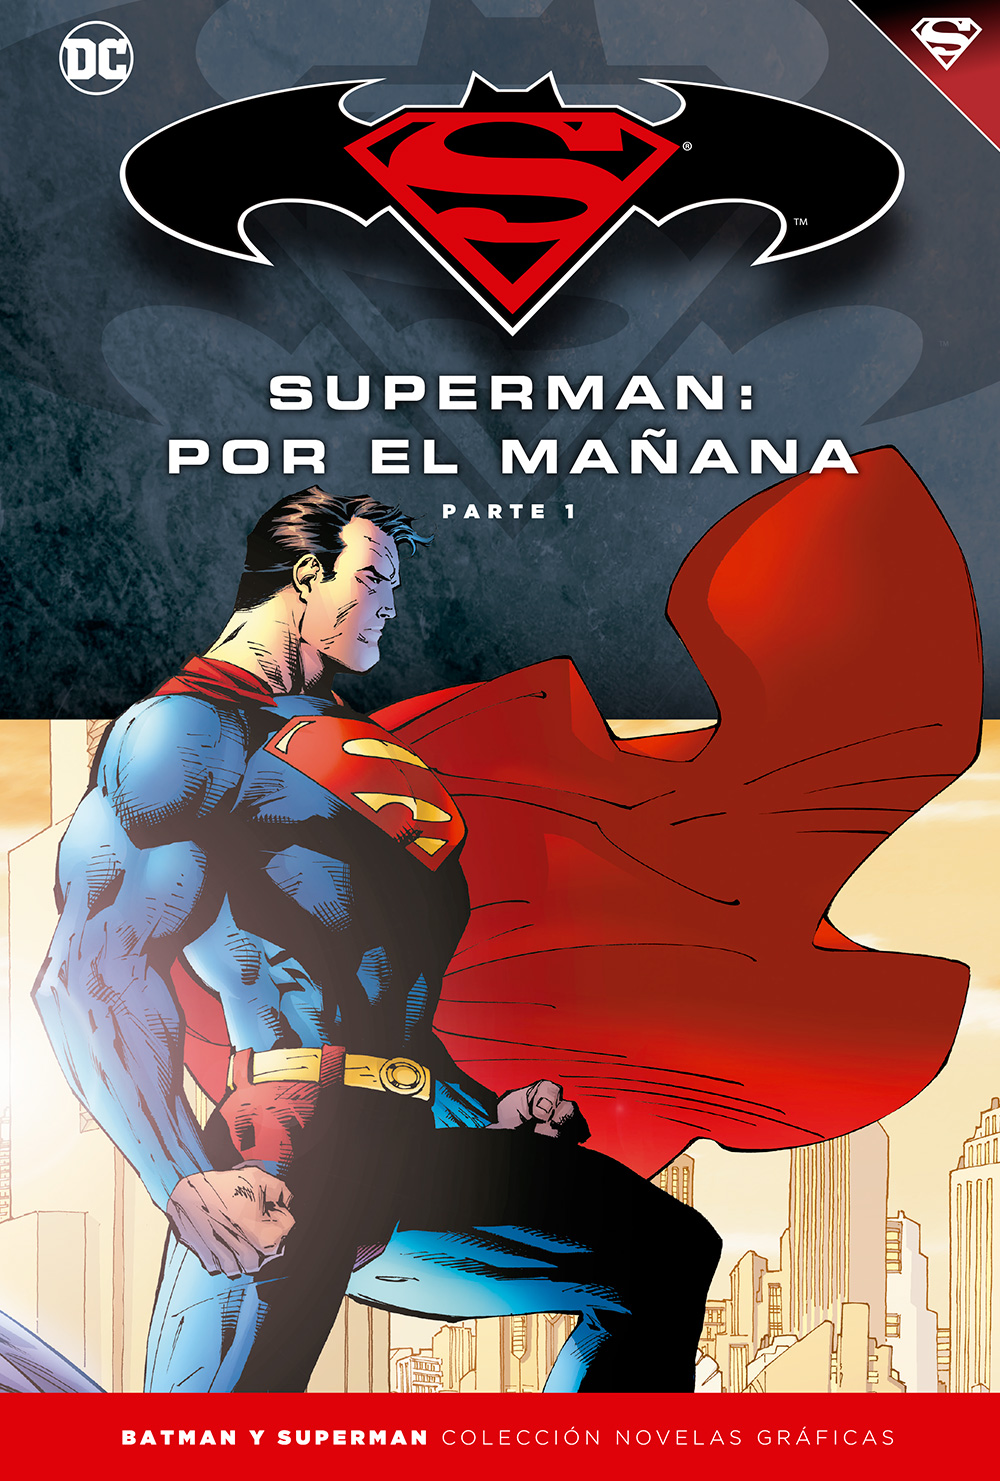 52 - [DC - Salvat] Batman y Superman: Colección Novelas Gráficas - Página 5 Portada_BMSM_11_superman_man%CC%83ana